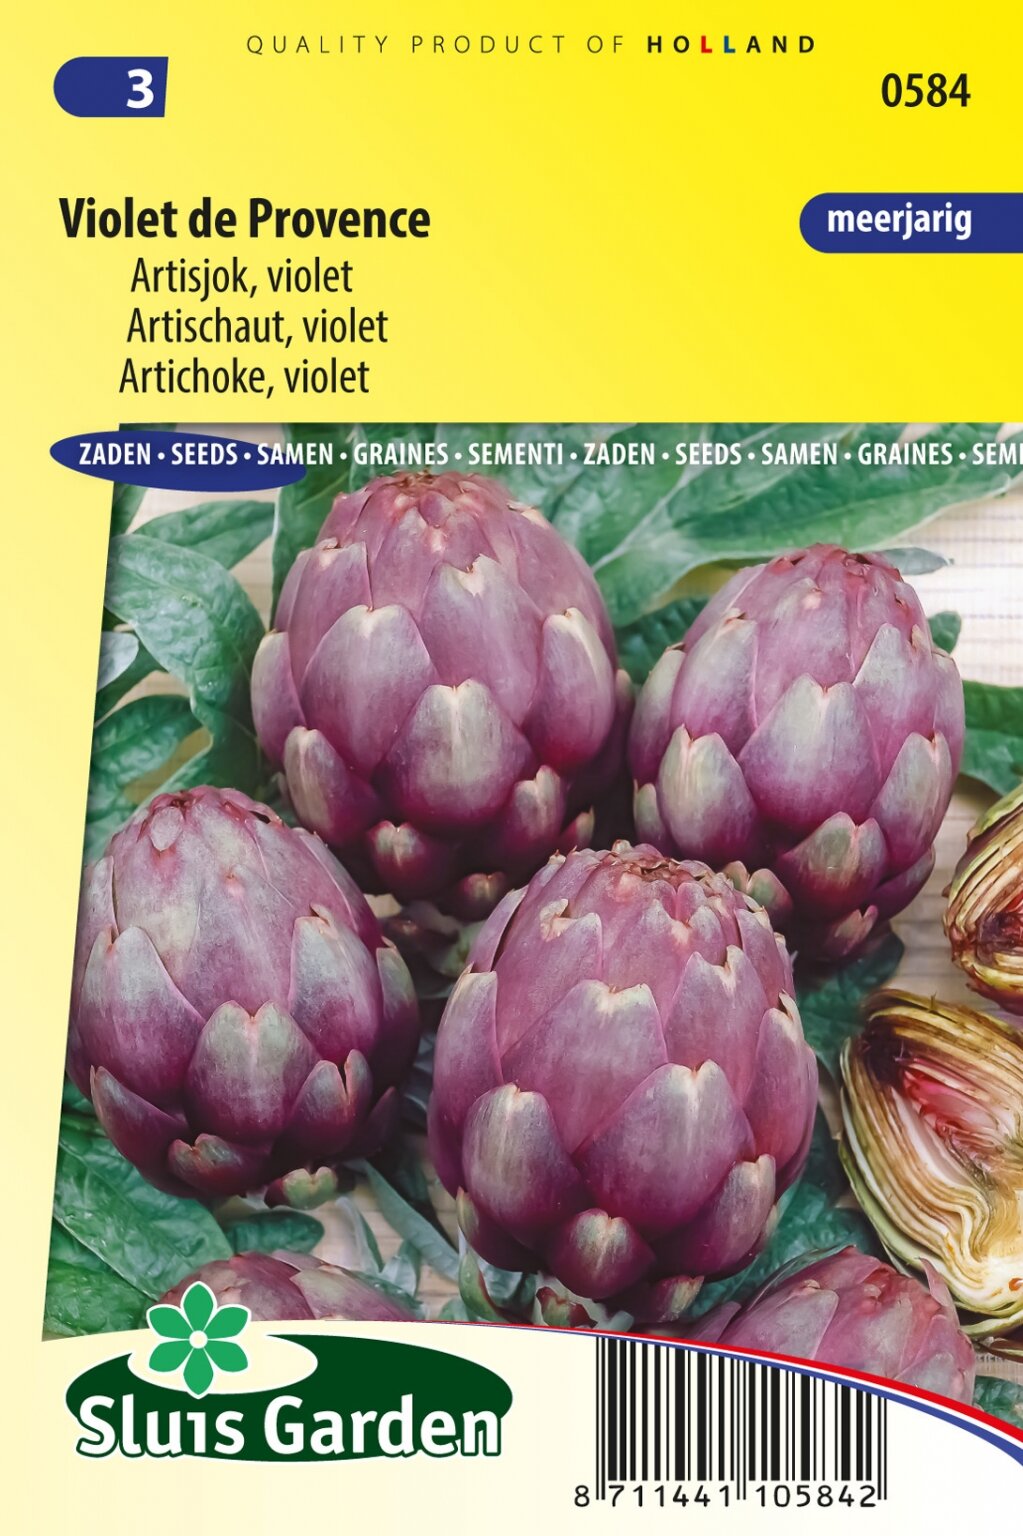 Oven lekkage Begrijpen Sluis Garden Artisjok Violet de Provence zaden kopen? - Tuingoedkoop.nl |  Het grootste online tuincentrum met zowel Tuinartikelen én Planten.